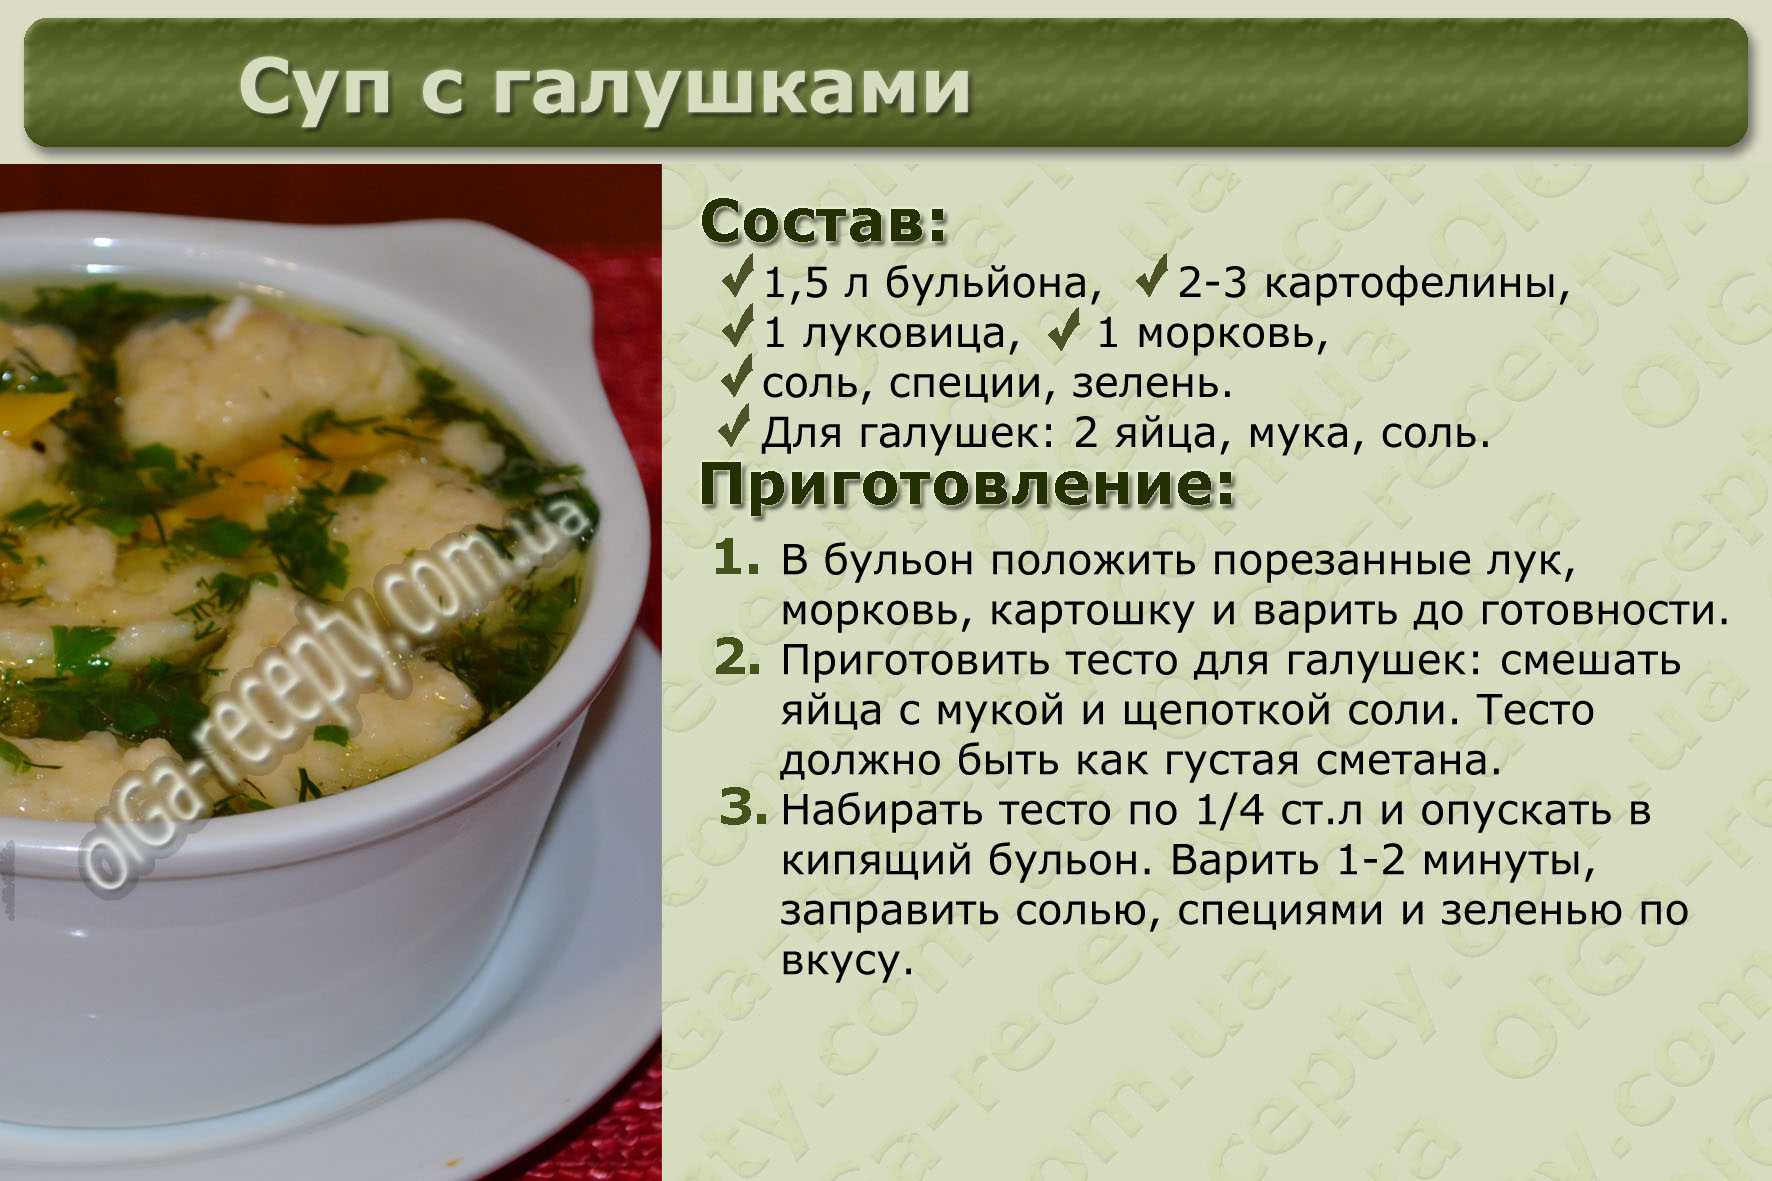 Рис на 3 литра супа. Рецепты в картинках. Рецепты первых блюд с описанием. Рецепты супов в картинках с описанием. Рецепты в картинках с описанием.